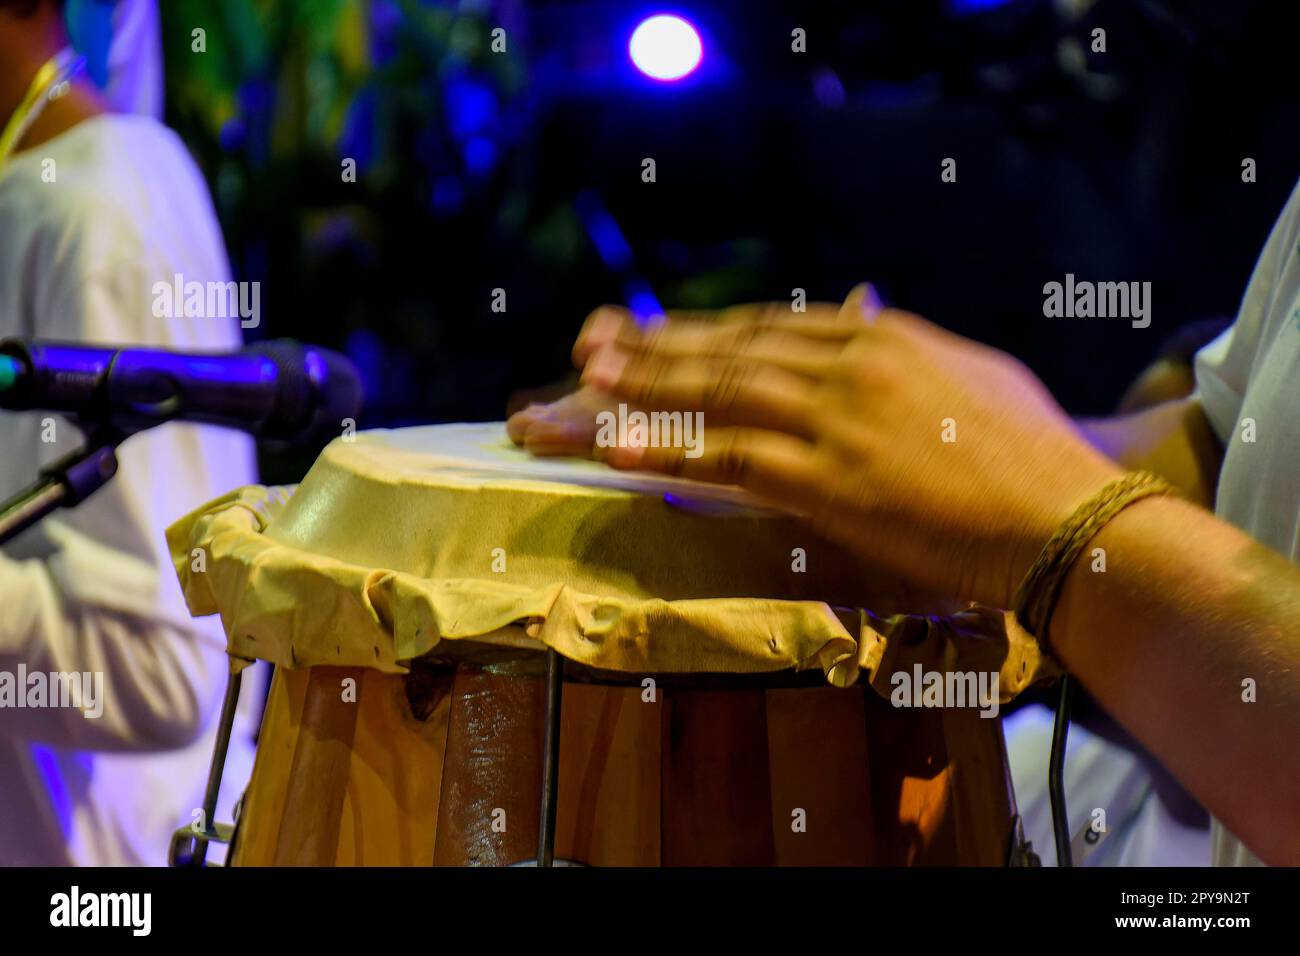 Die Trommeln, die in Brasilien als atabaque bezeichnet werden, wurden während einer typischen Umbanda-Zeremonie verwendet, einer afro-brasilianischen Religion, wo sie die Hauptinstrumente sind, Brasilien Stockfoto